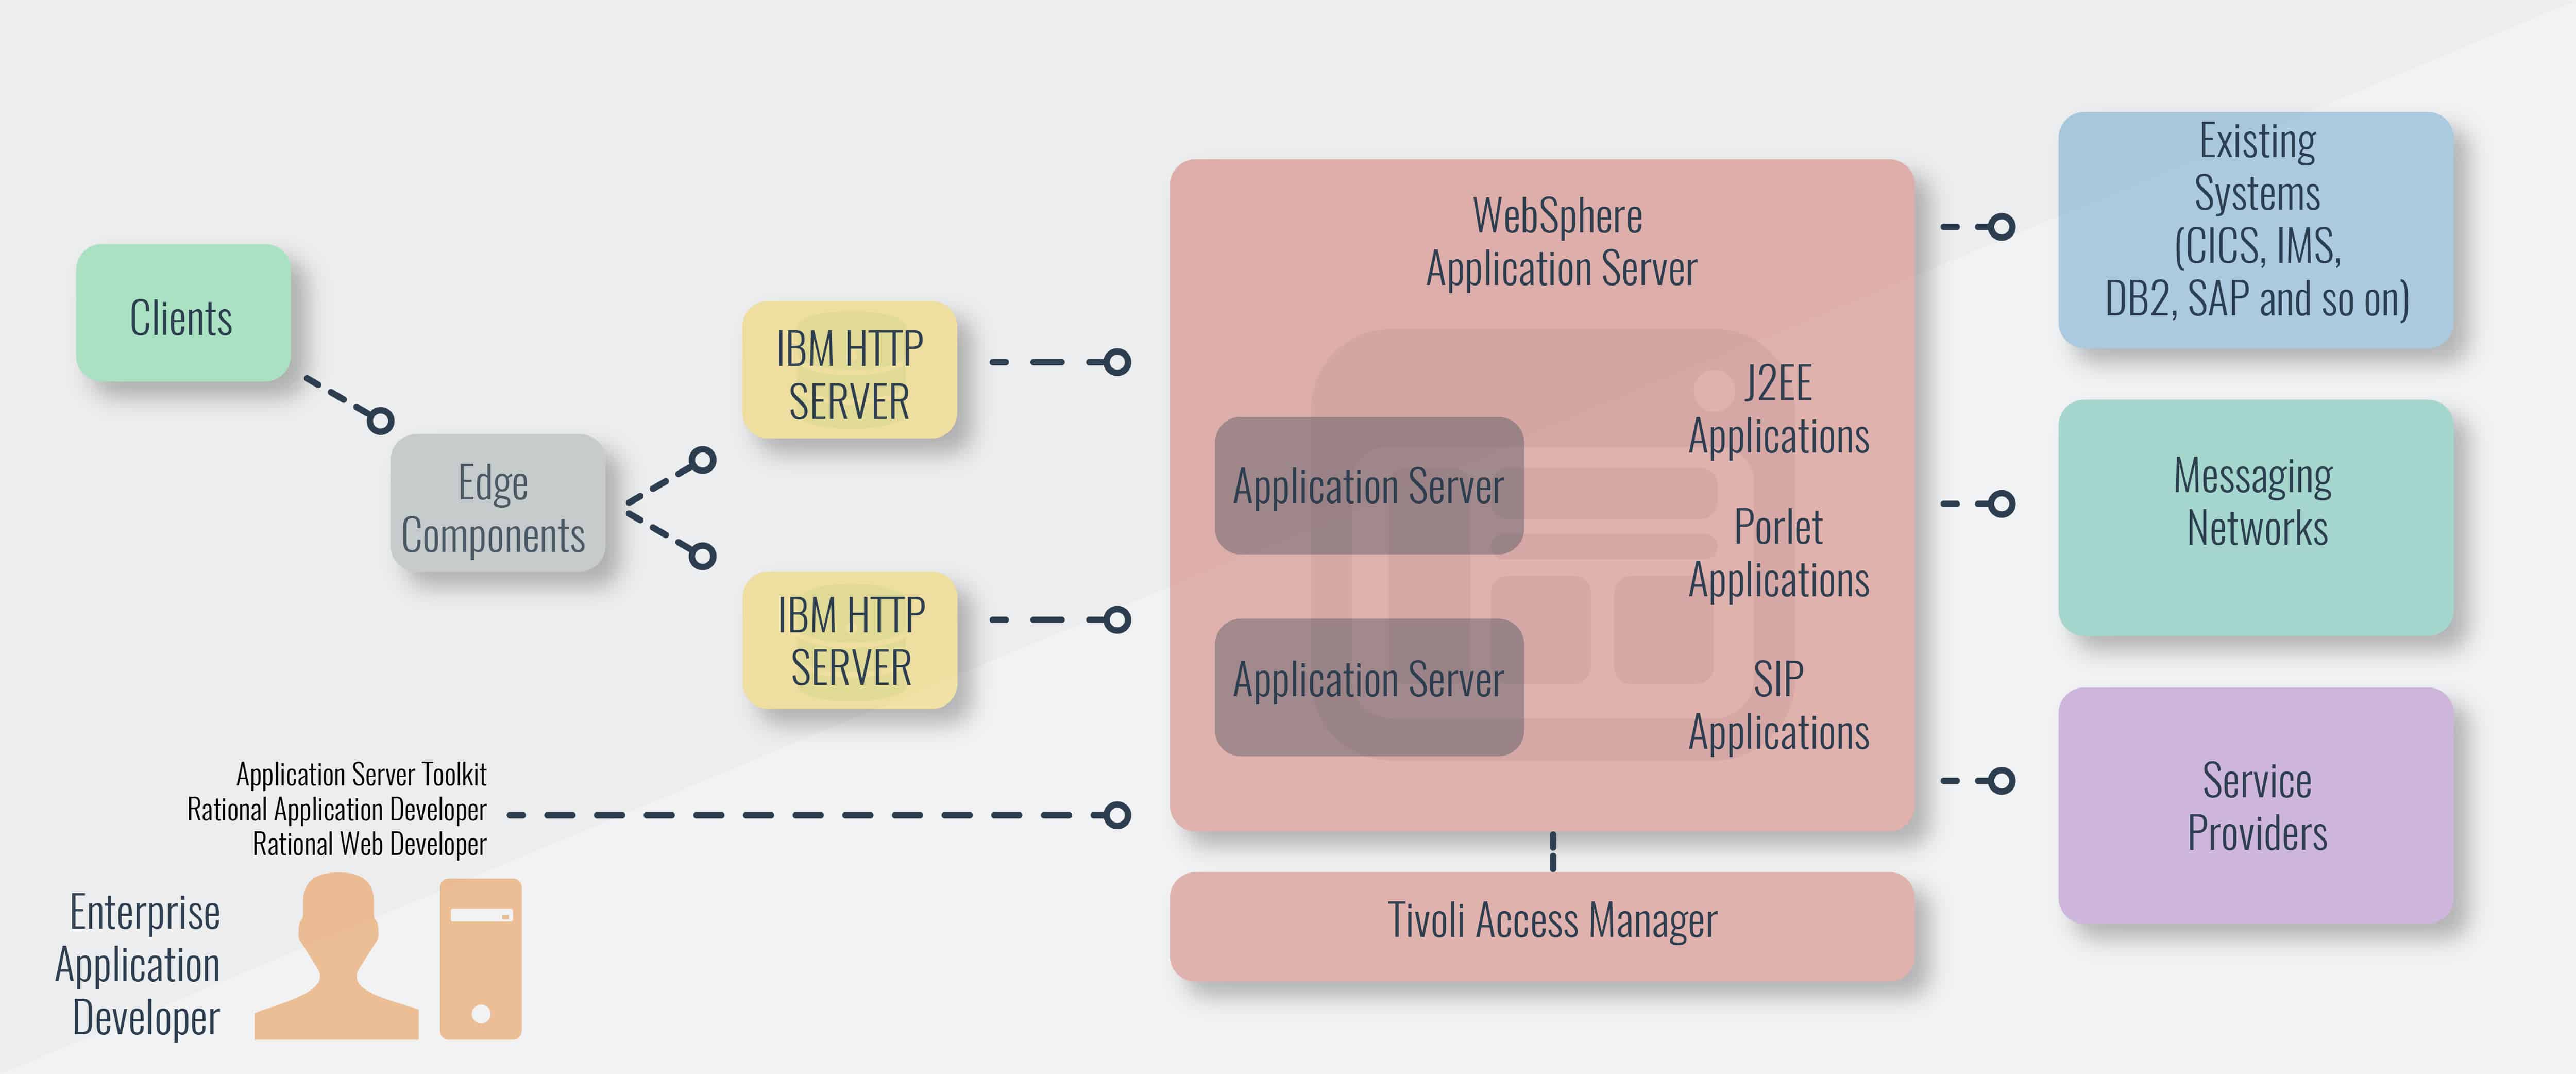 راهنمای سرور برنامه WebSphere و ابزارهای مدیریت